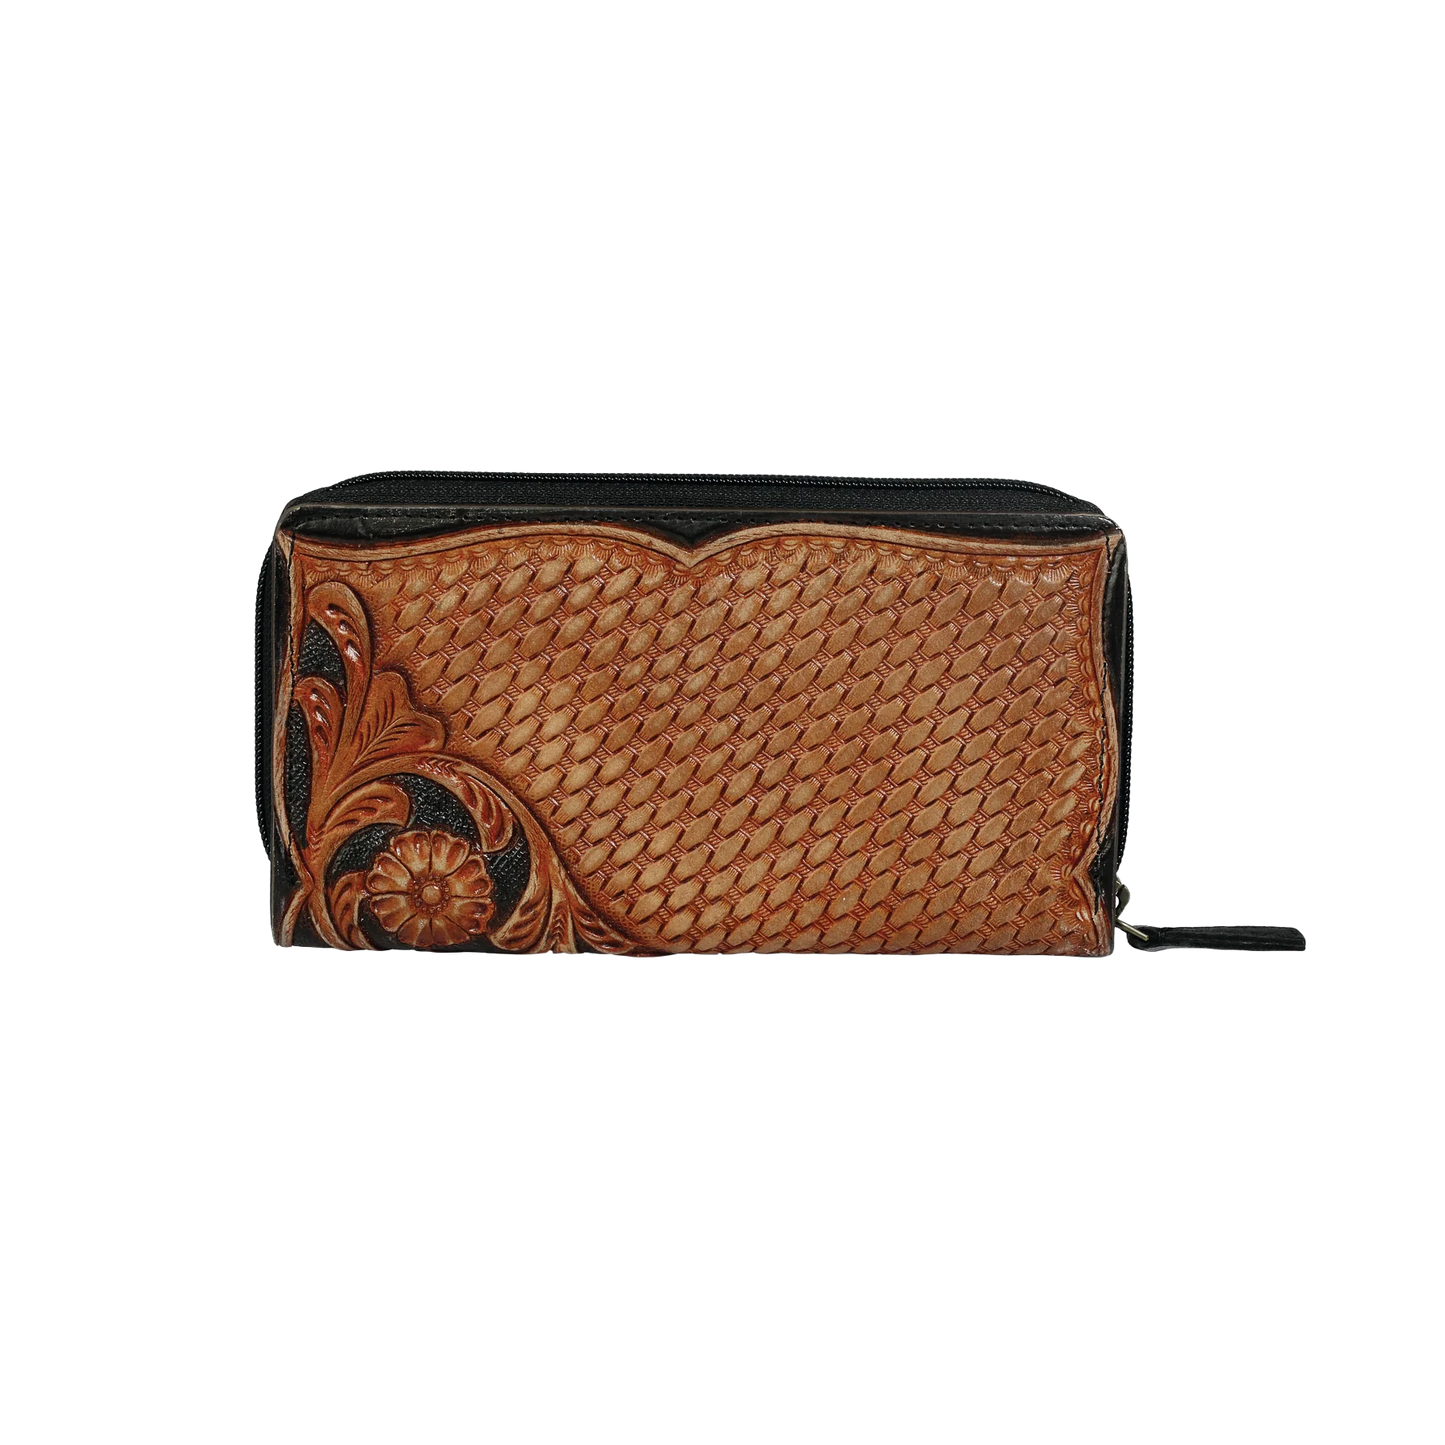 Myra Bag Ladies Mynxe Black & Brown Leather Wallet S-3165